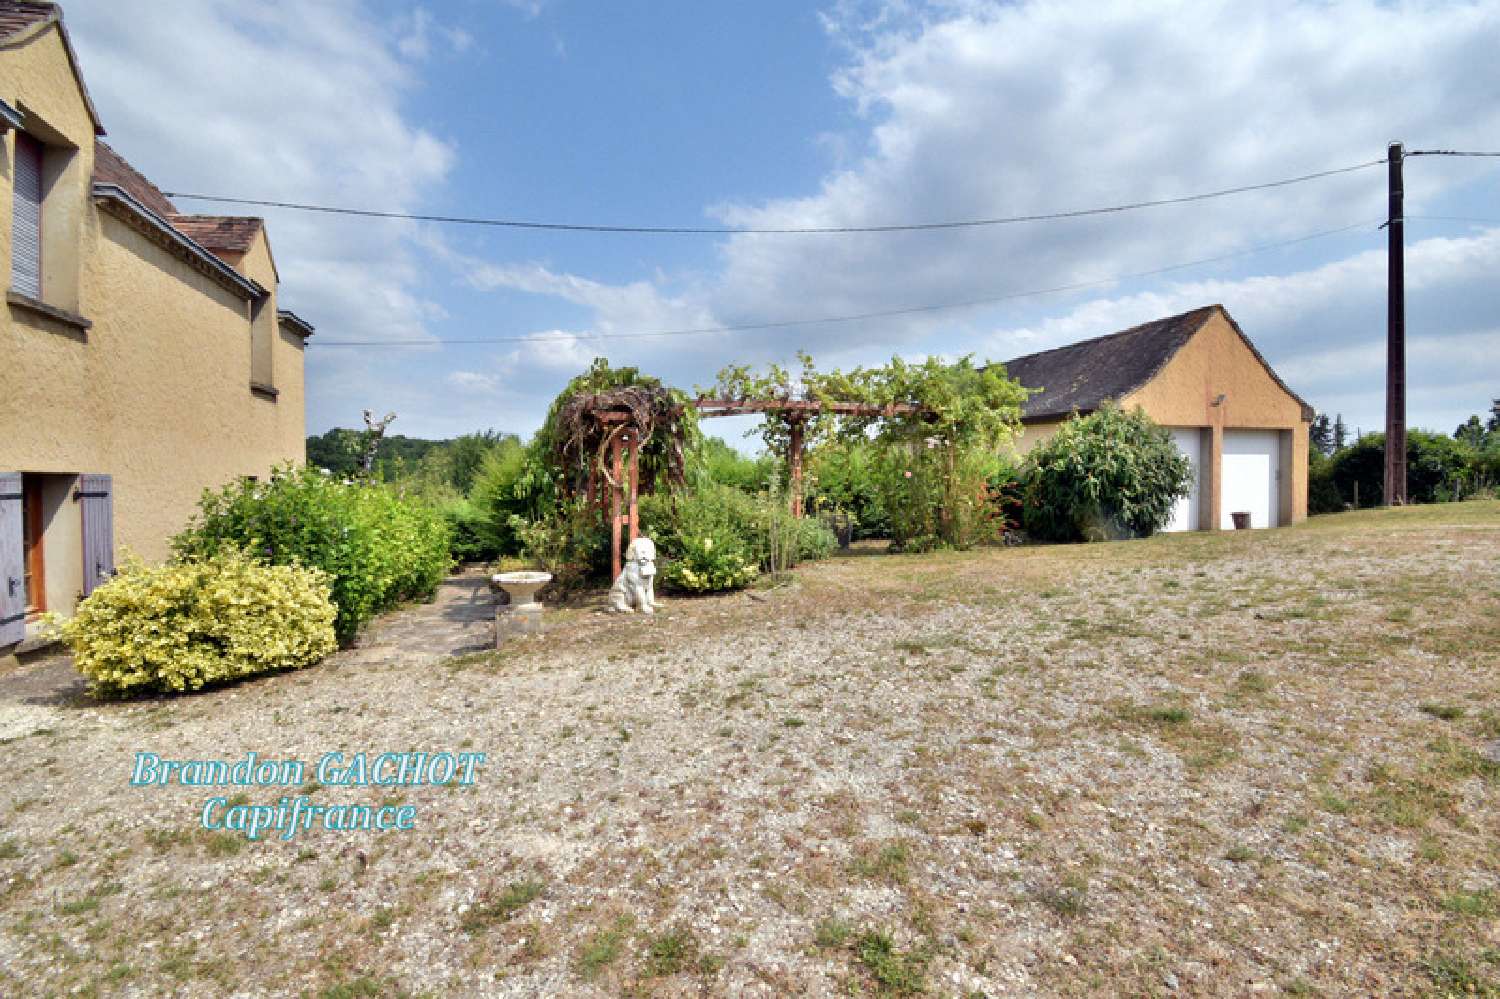  à vendre maison de village Prigonrieux Dordogne 3